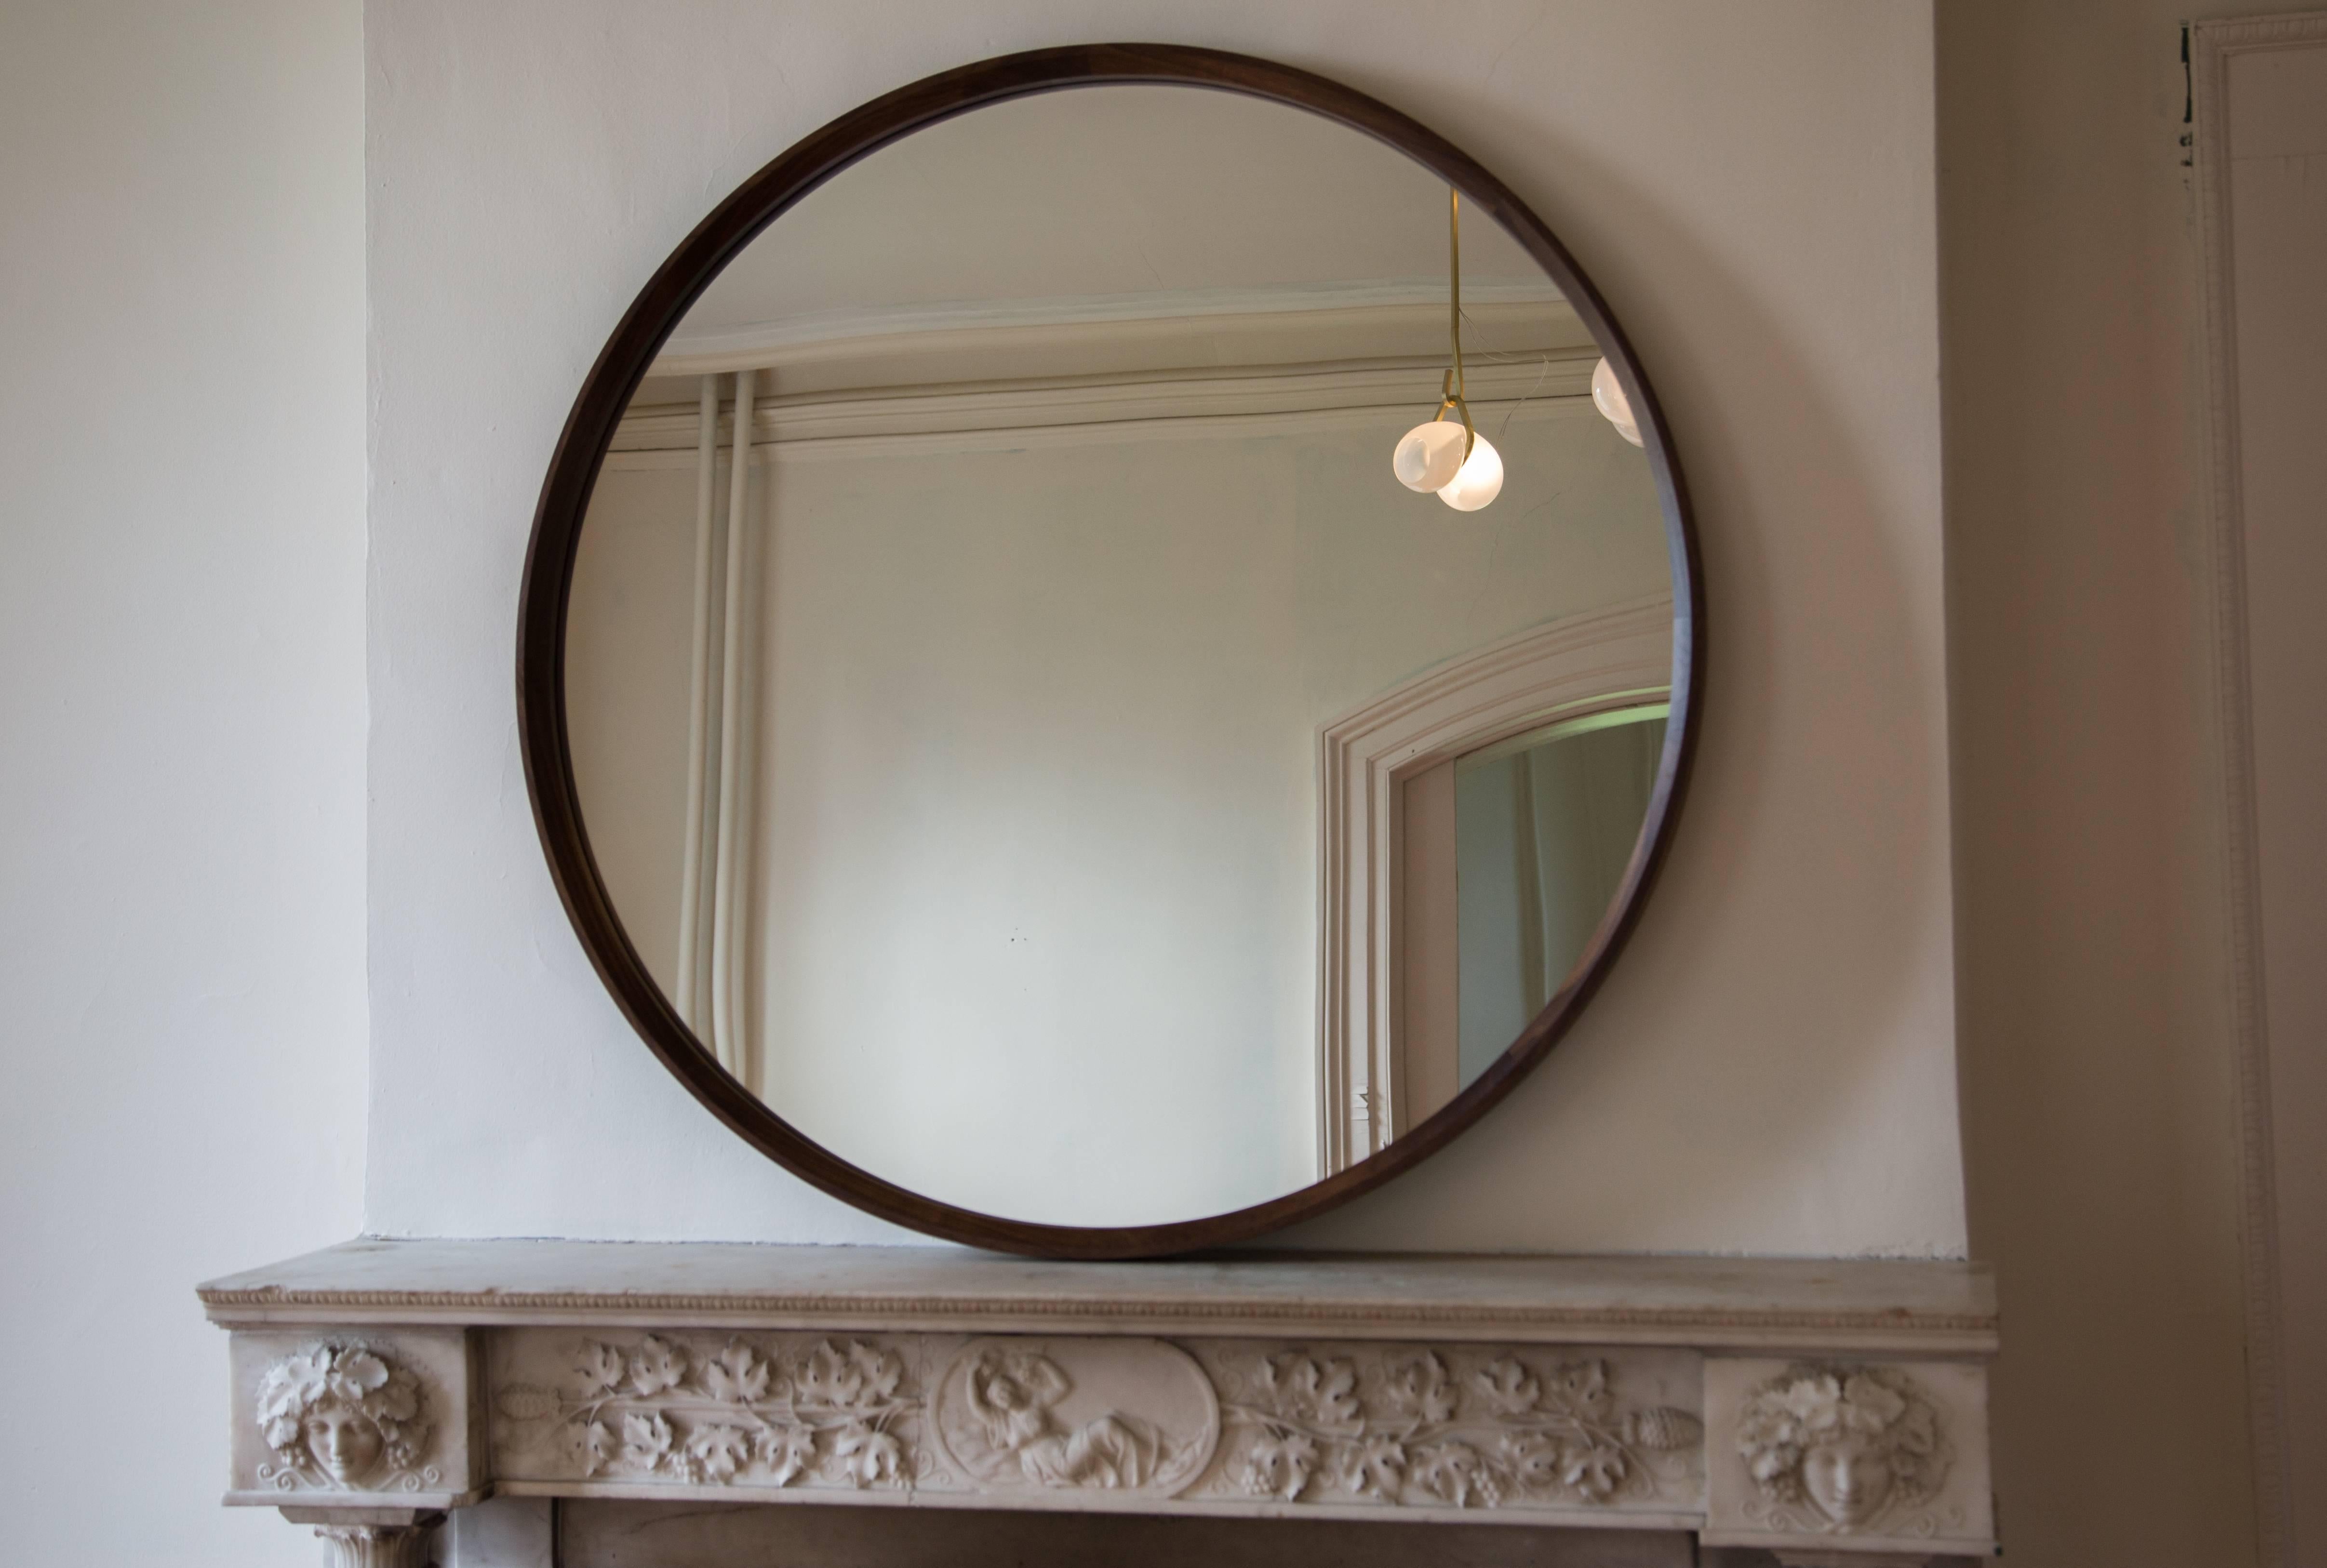 Ce miroir simple et élégant présente un grand biseau intérieur autour du cadre en bois, créant un magnifique bord extérieur fin. Cadre en noyer présenté en version circulaire pour montage mural et rectangulaire pour montage au sol.

Fabriqué sur